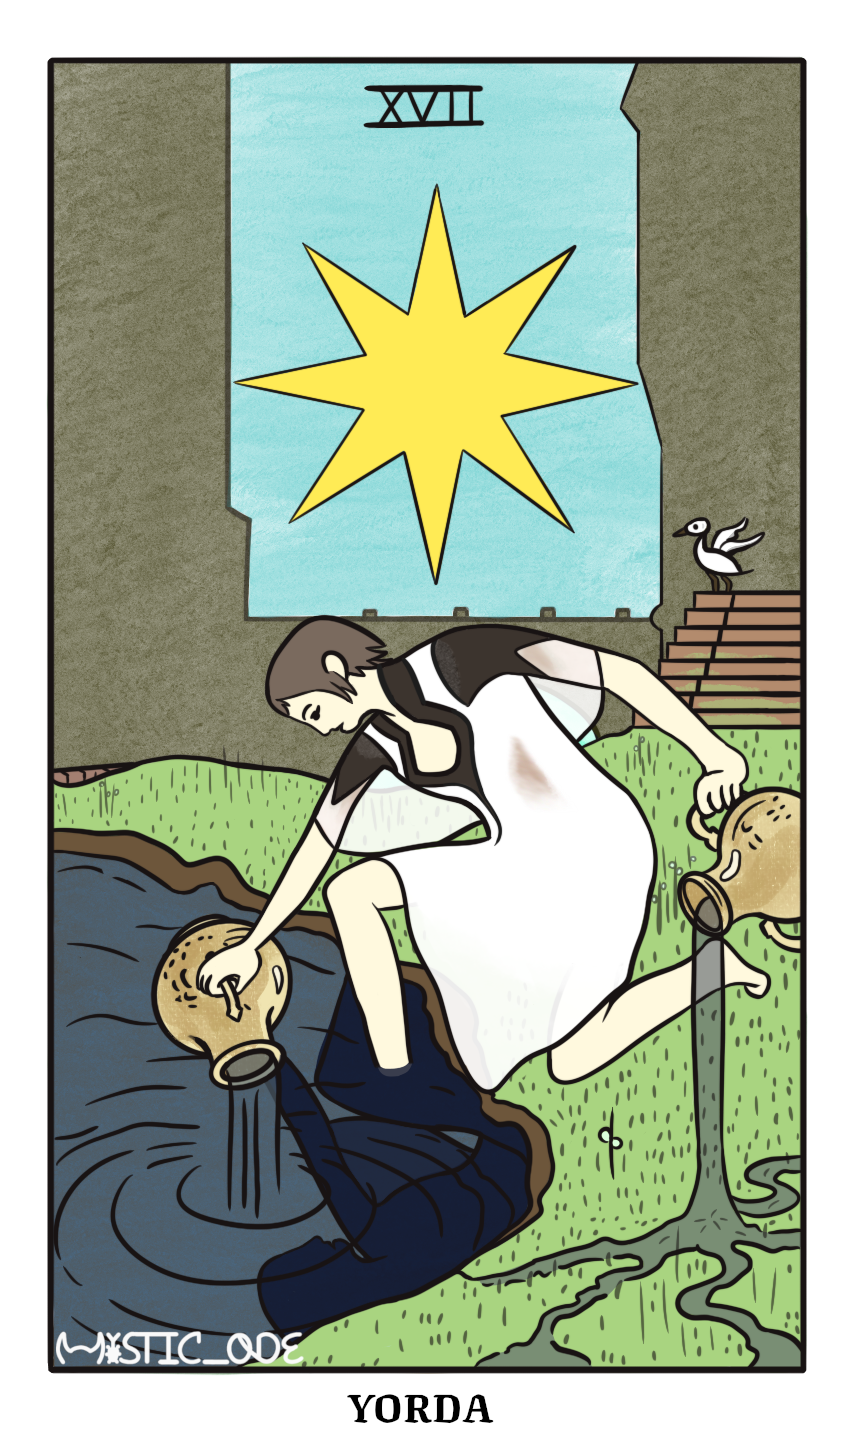 Image: A tarot card depicting yoruda as a tarot card originally titled The Star